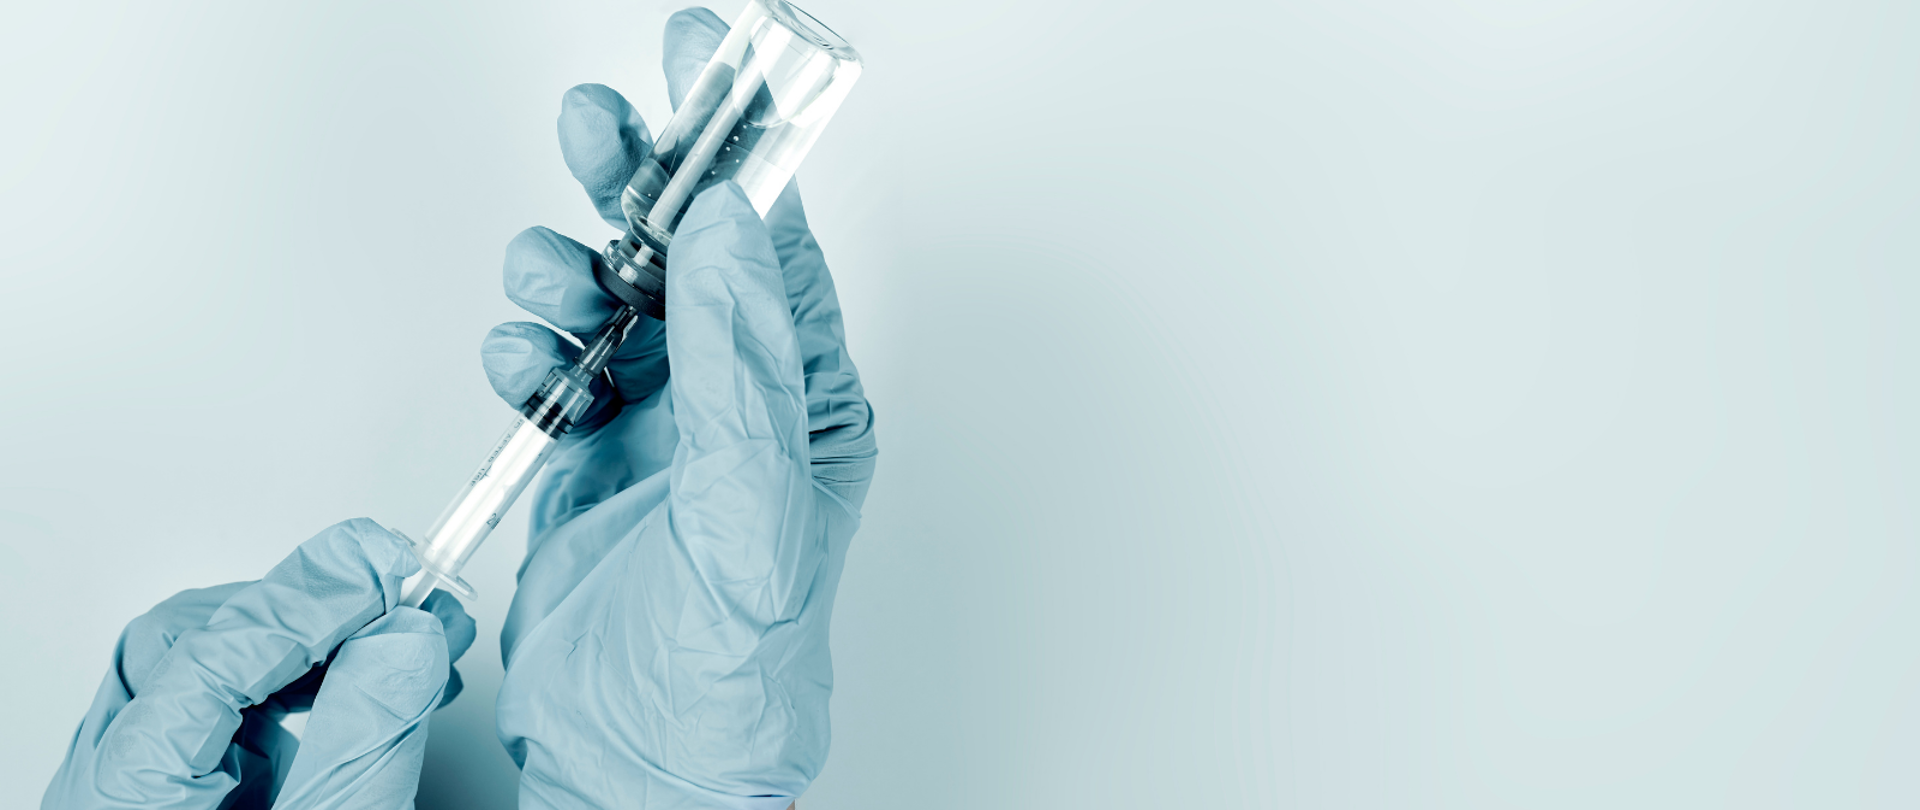 Na bladoniebieskim tle dwie męskie ręce w bladoniebieskich rękawiczkach gumowych trzymają strzykawkę, którą pobierają szczepionkę.